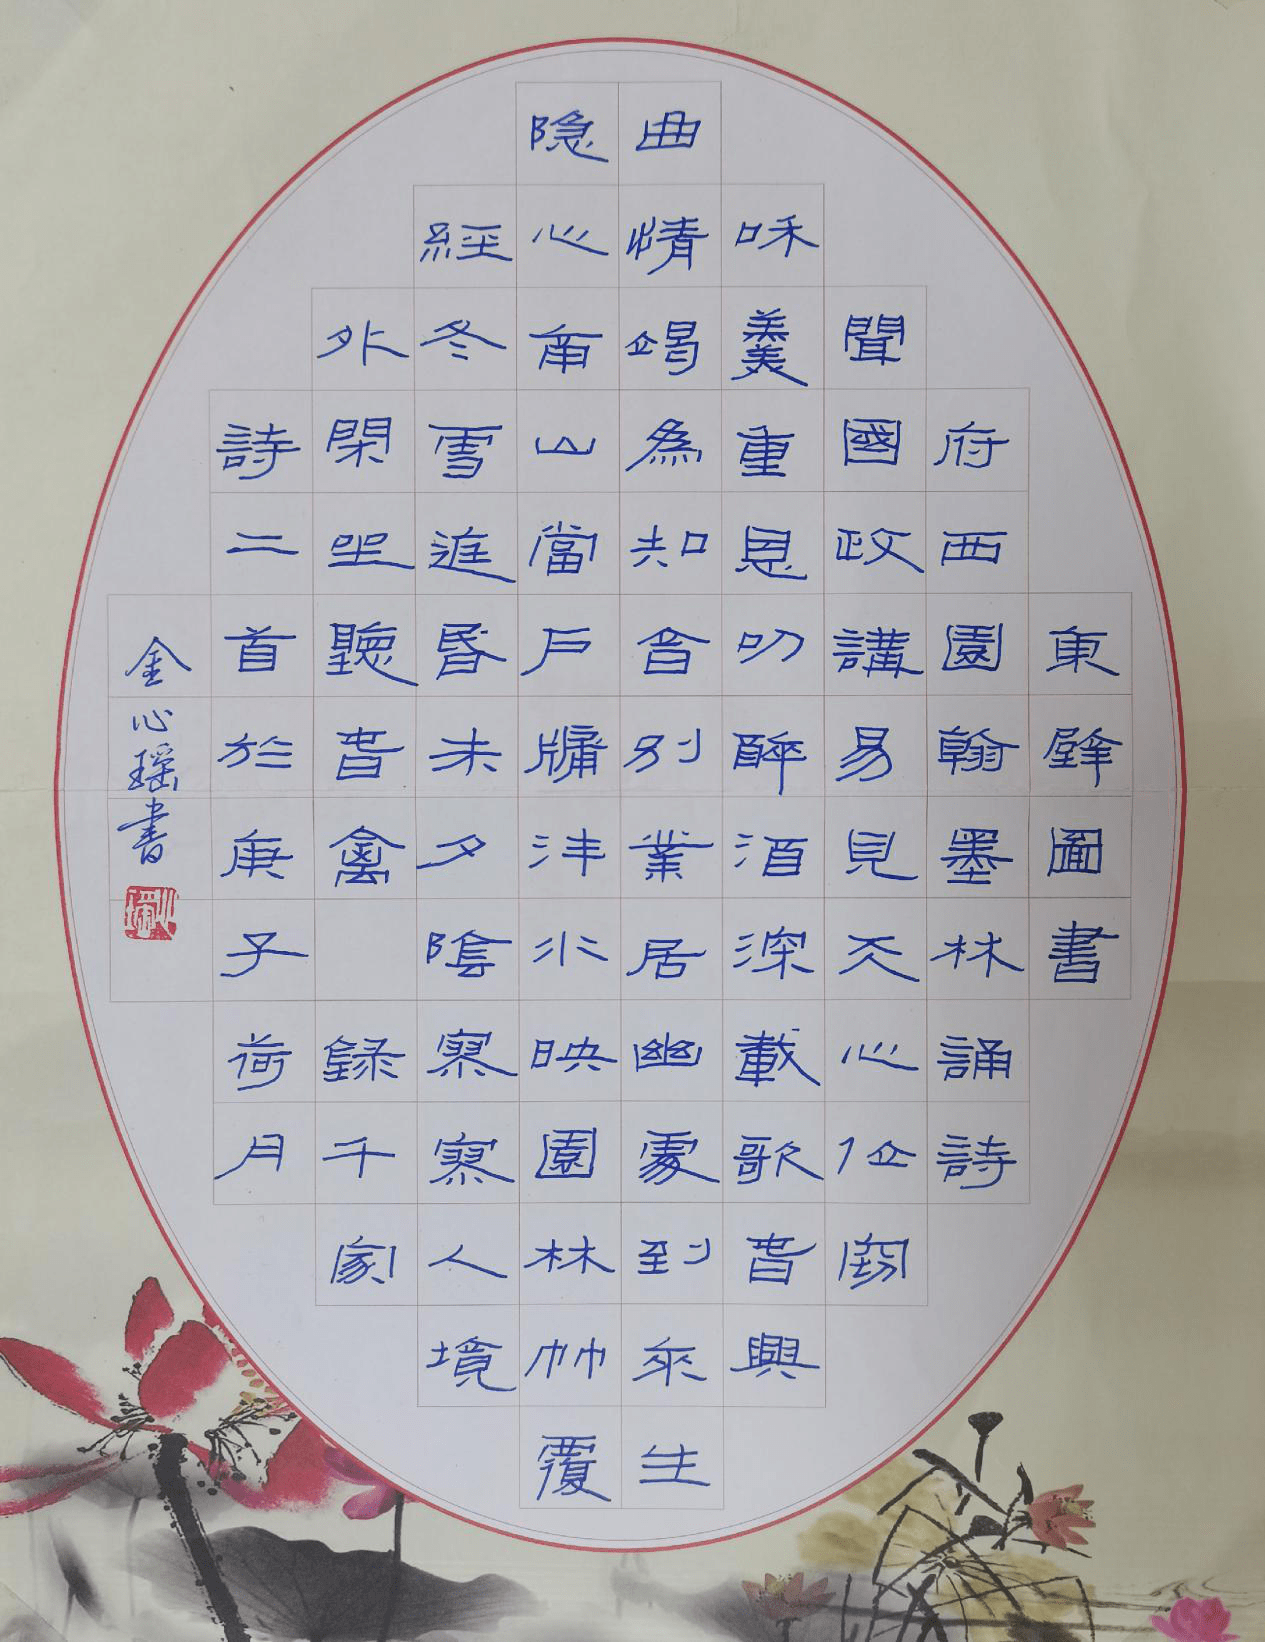 9,姓名:邓广峰,作品:硬笔书法,区域:河北省.